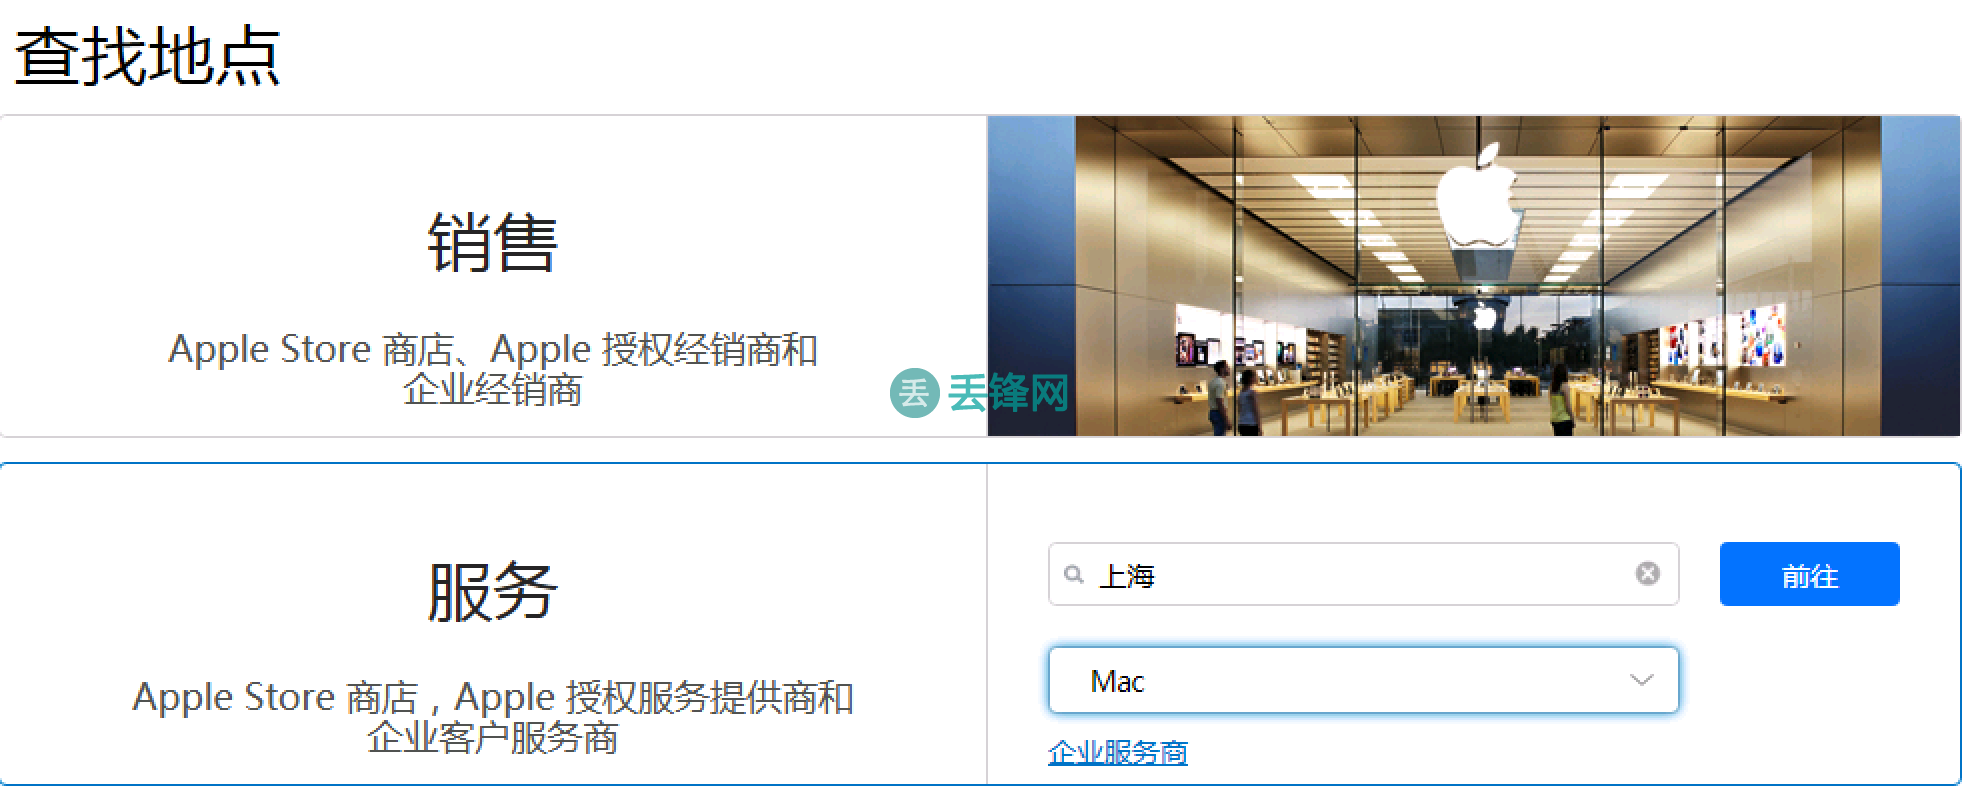 上海苹果笔记本电脑macbook售后维修中心地址整理